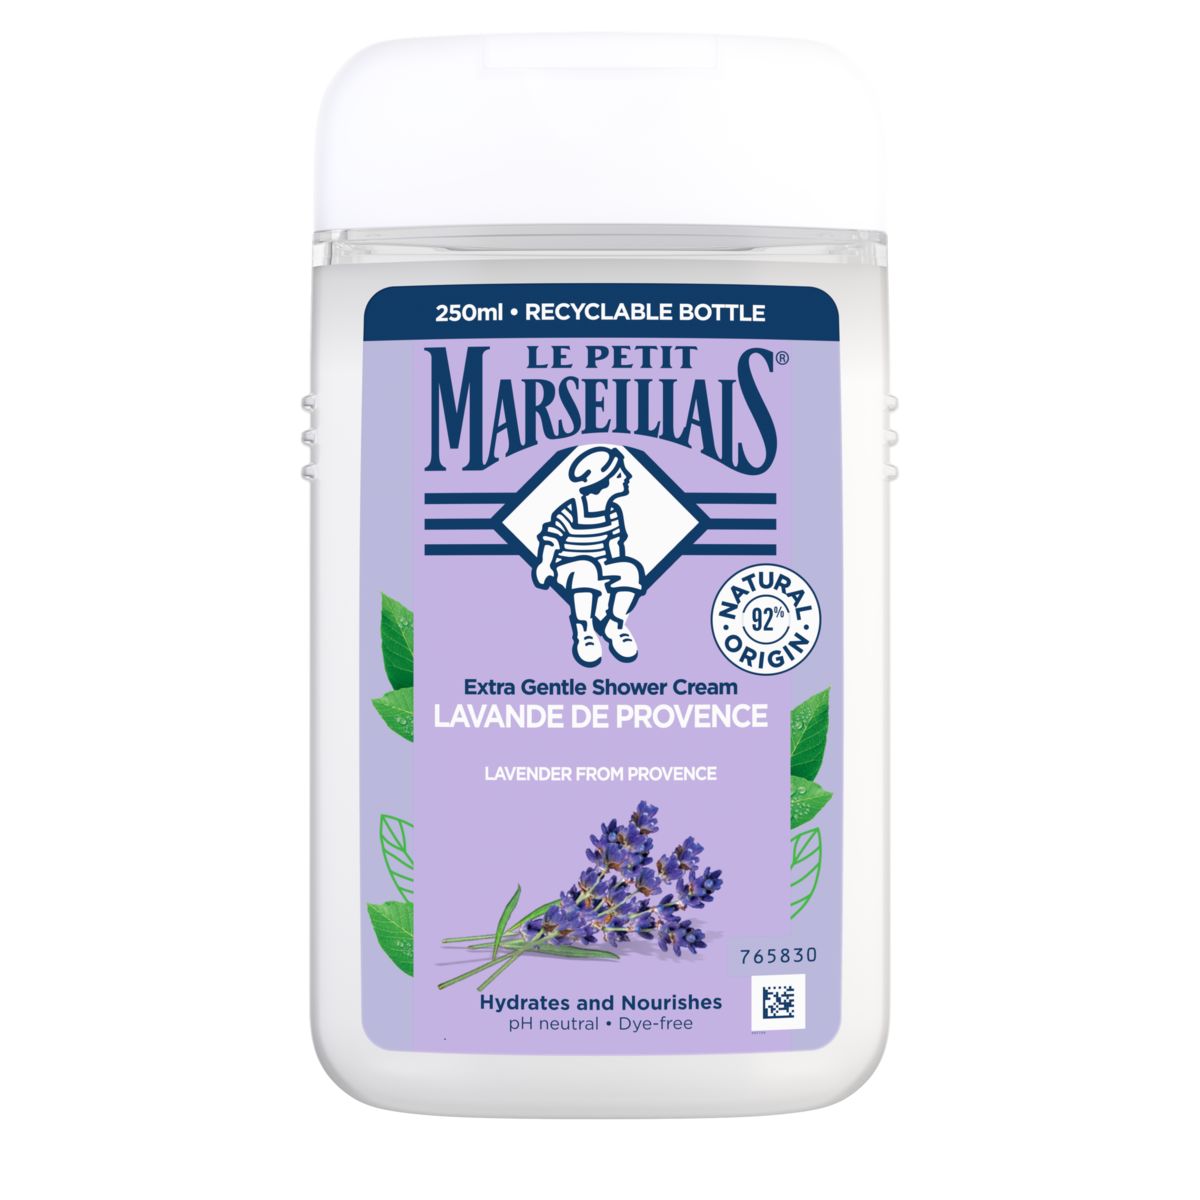 Le Petit Marseillais Lavendel Provence Extra Zachte Douchecrème 250 ml